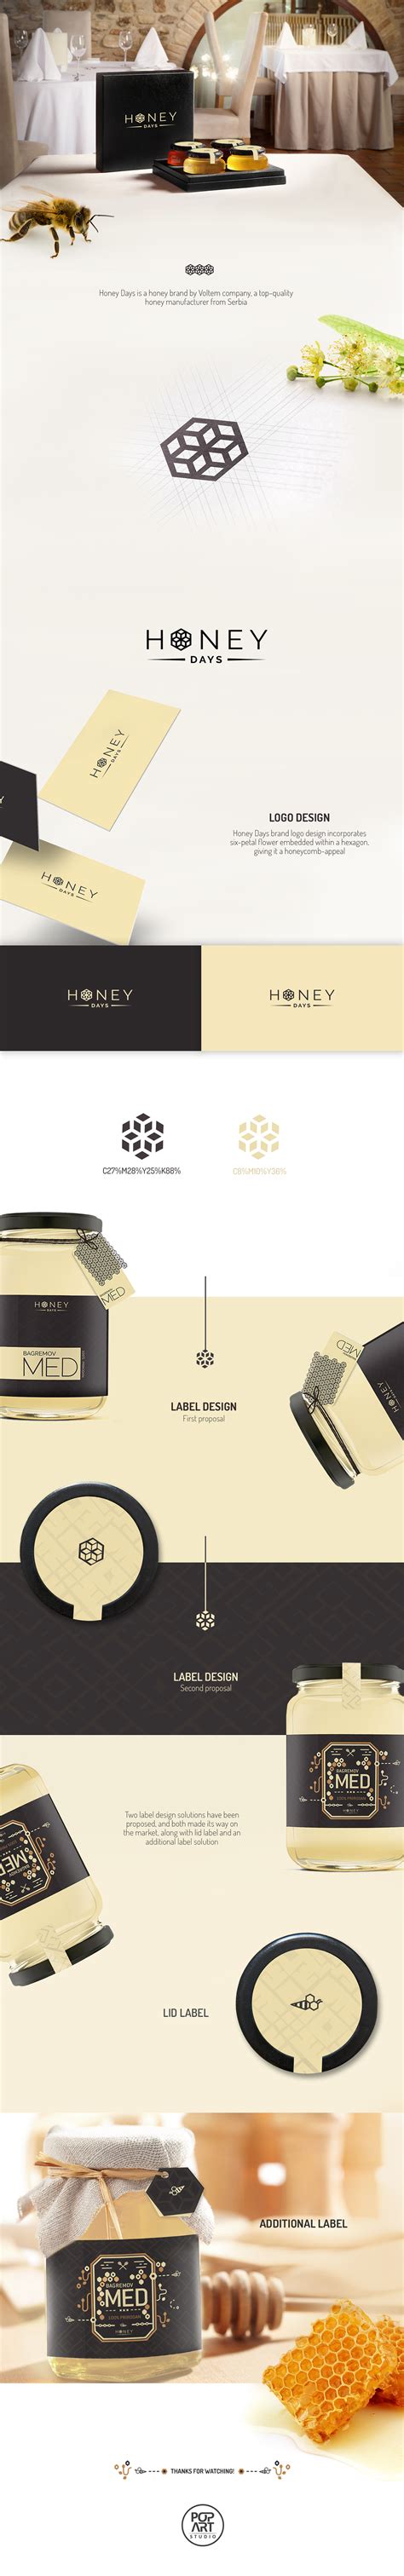 Honey Days Logo And Label Design On Behance Honey Label Design Label